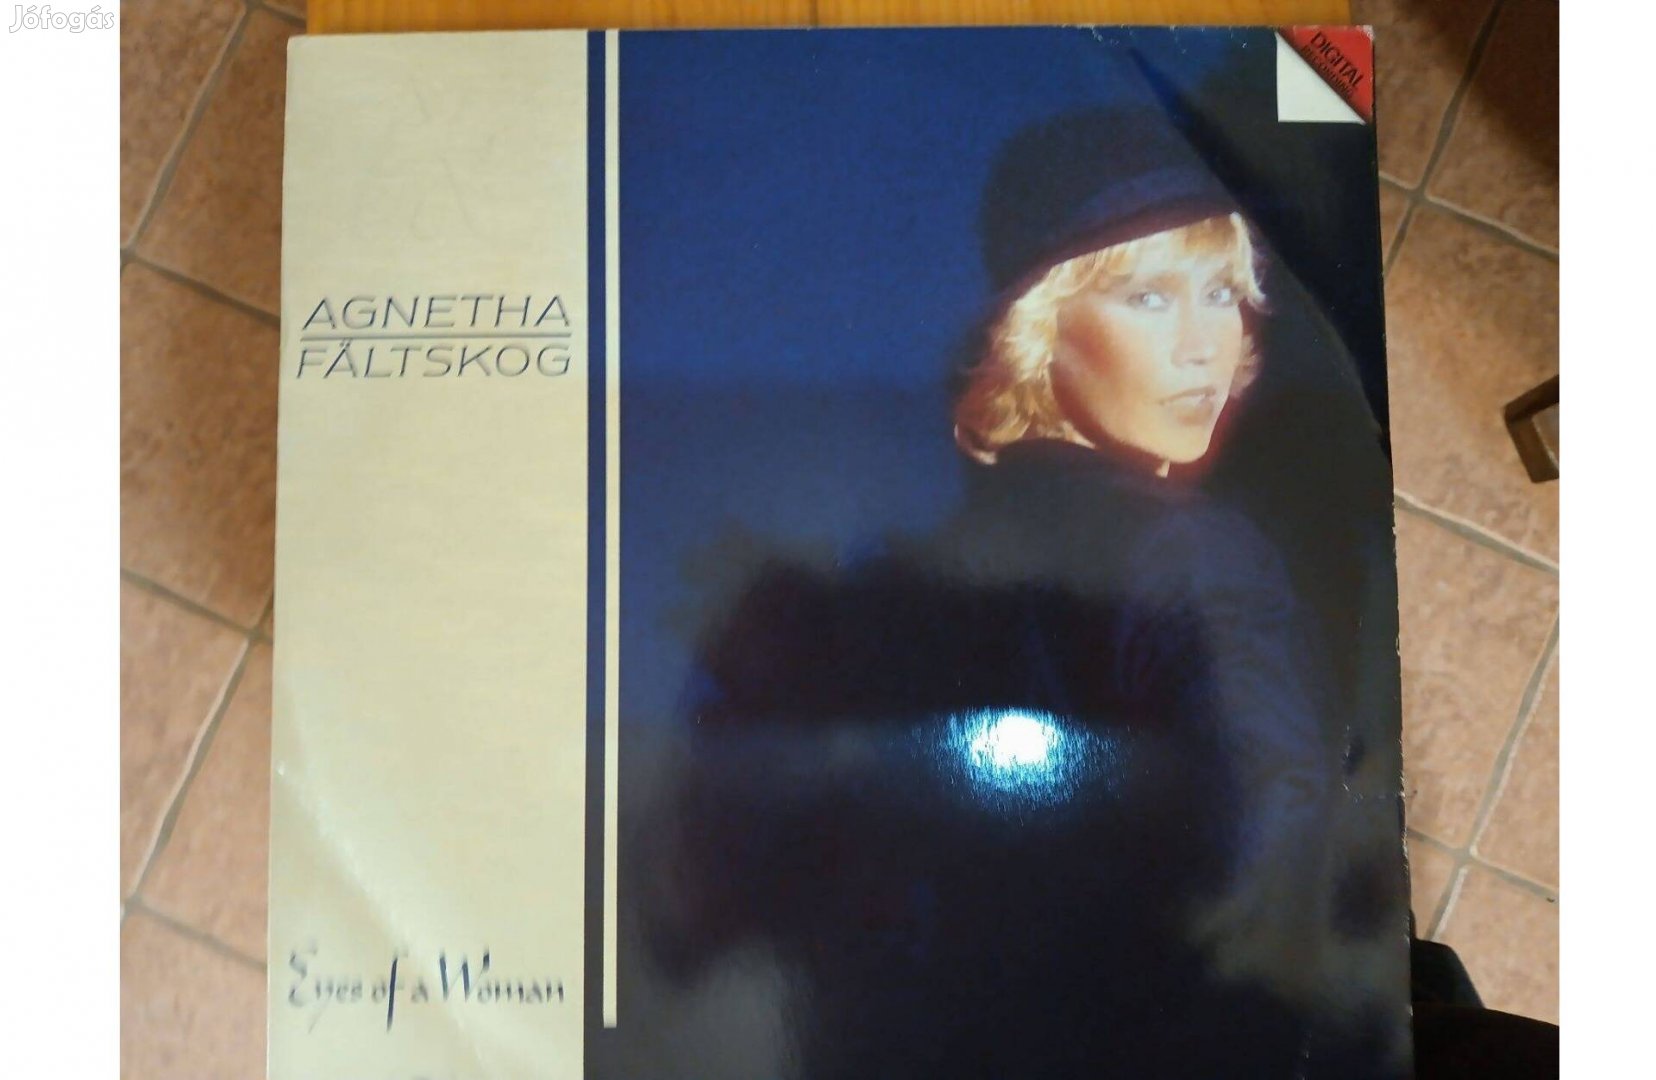 Agnetha Fältskog bakelit hanglemezek eladók